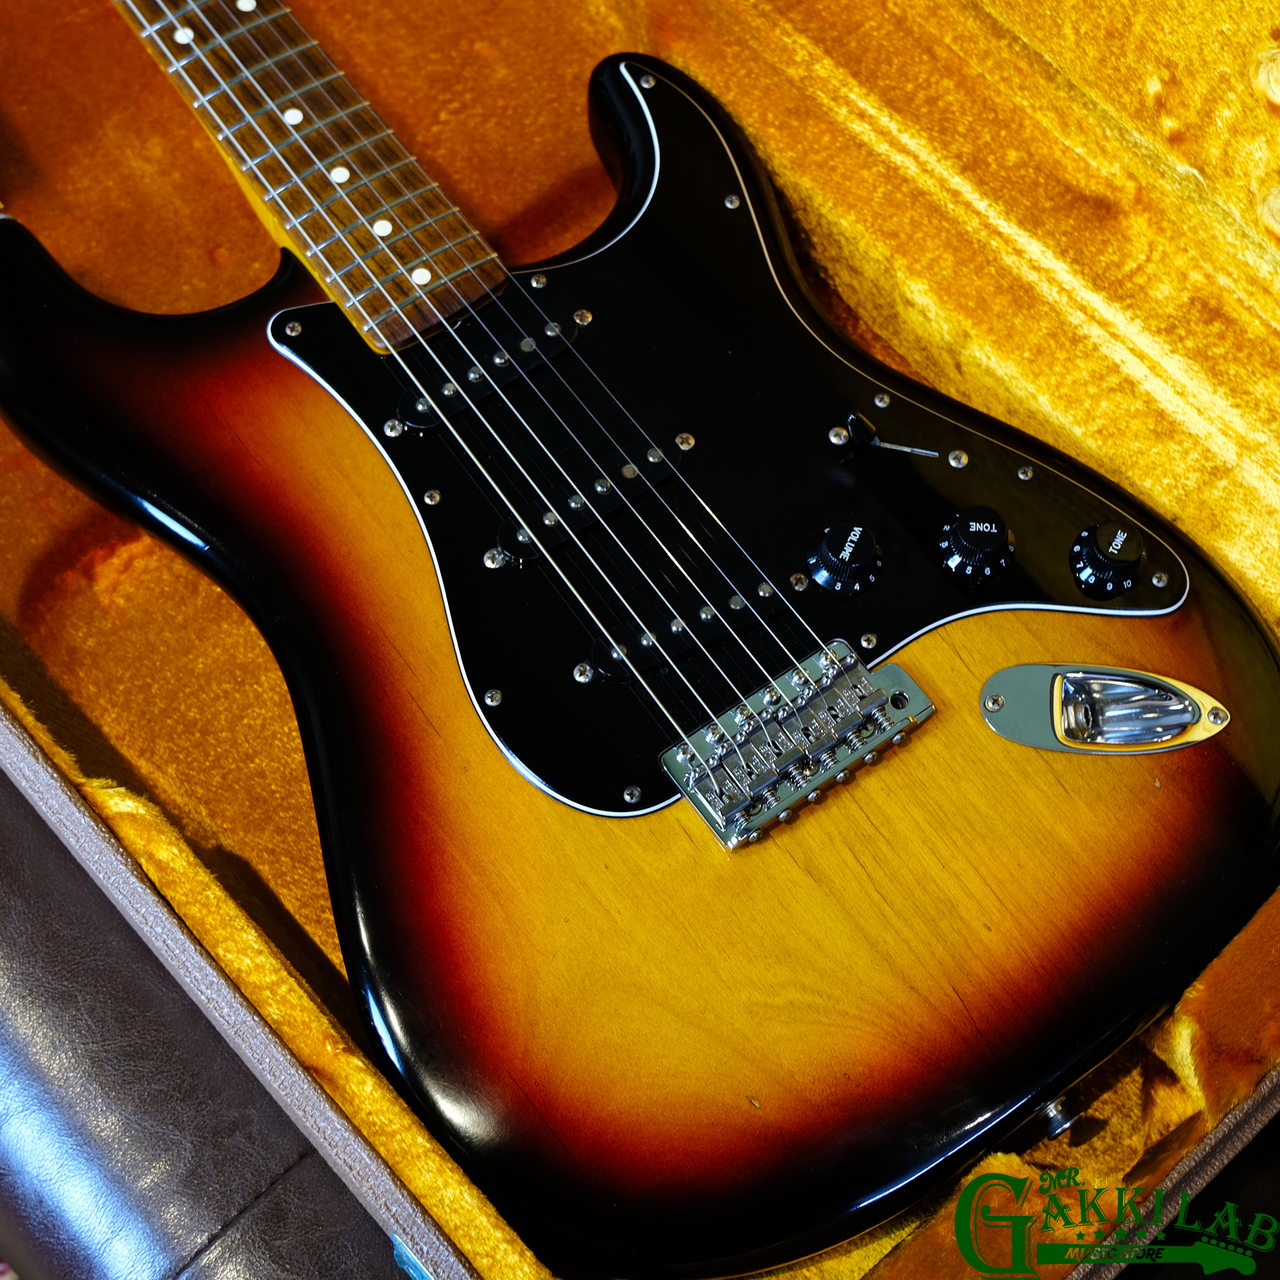 大人気正規品中古 ◆ Fender American Vintage 62 Stratocaster 1991 ◆ フェンダー USA アメリカンビンテージ シリーズ ストラトキャスター ♪ フェンダー